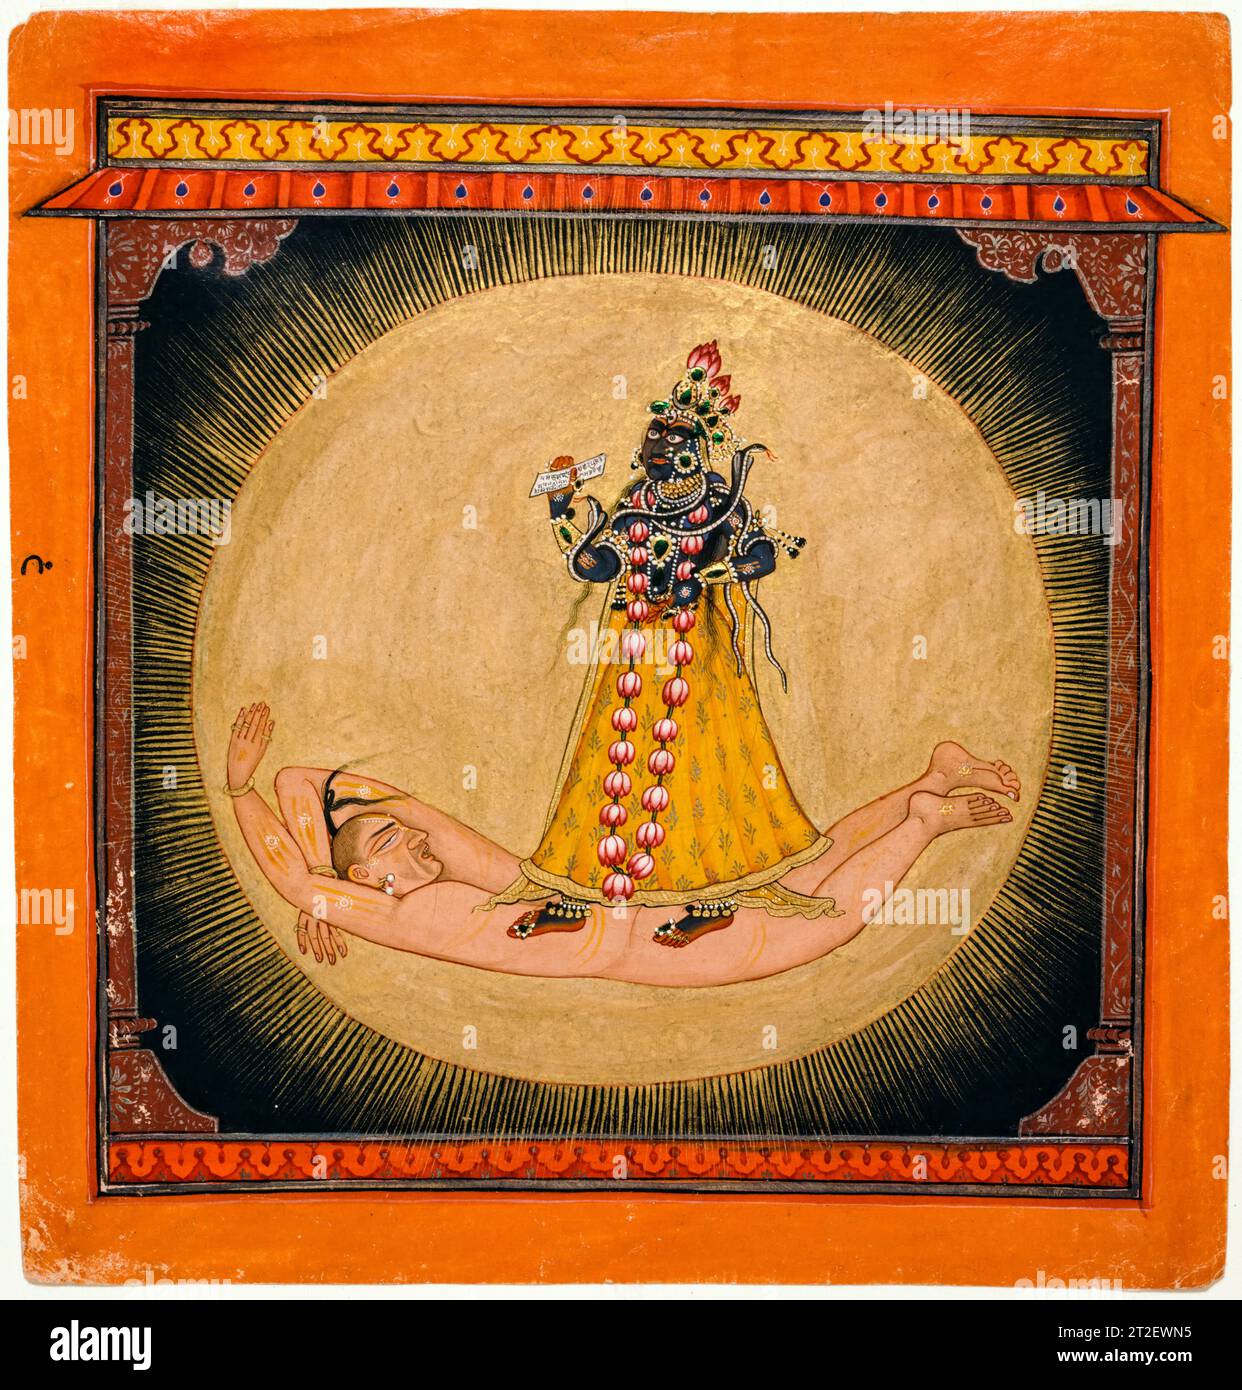 Bhadrakali all'interno del Sol Levante, pittura ad acquerello con vernice metallizzata oro e argento e casse ad ala di coleottero, arte indiana del XVII secolo, 1660-1670 Foto Stock